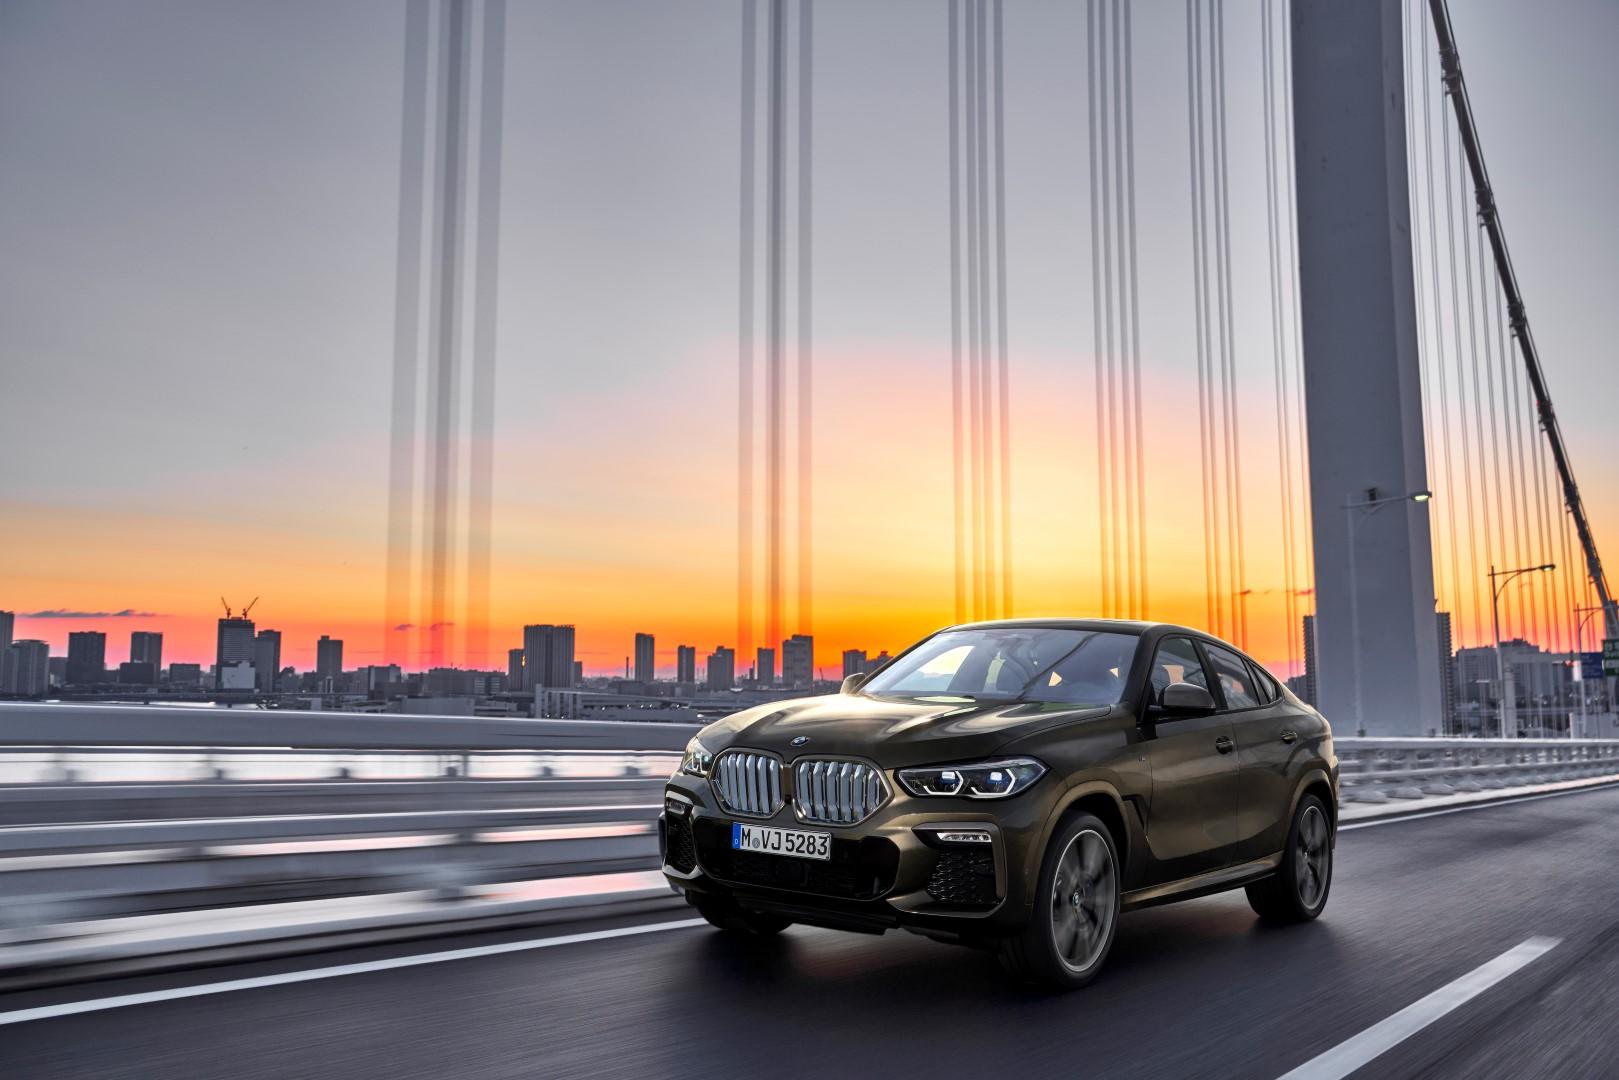 BMW Salone di Francoforte 2019